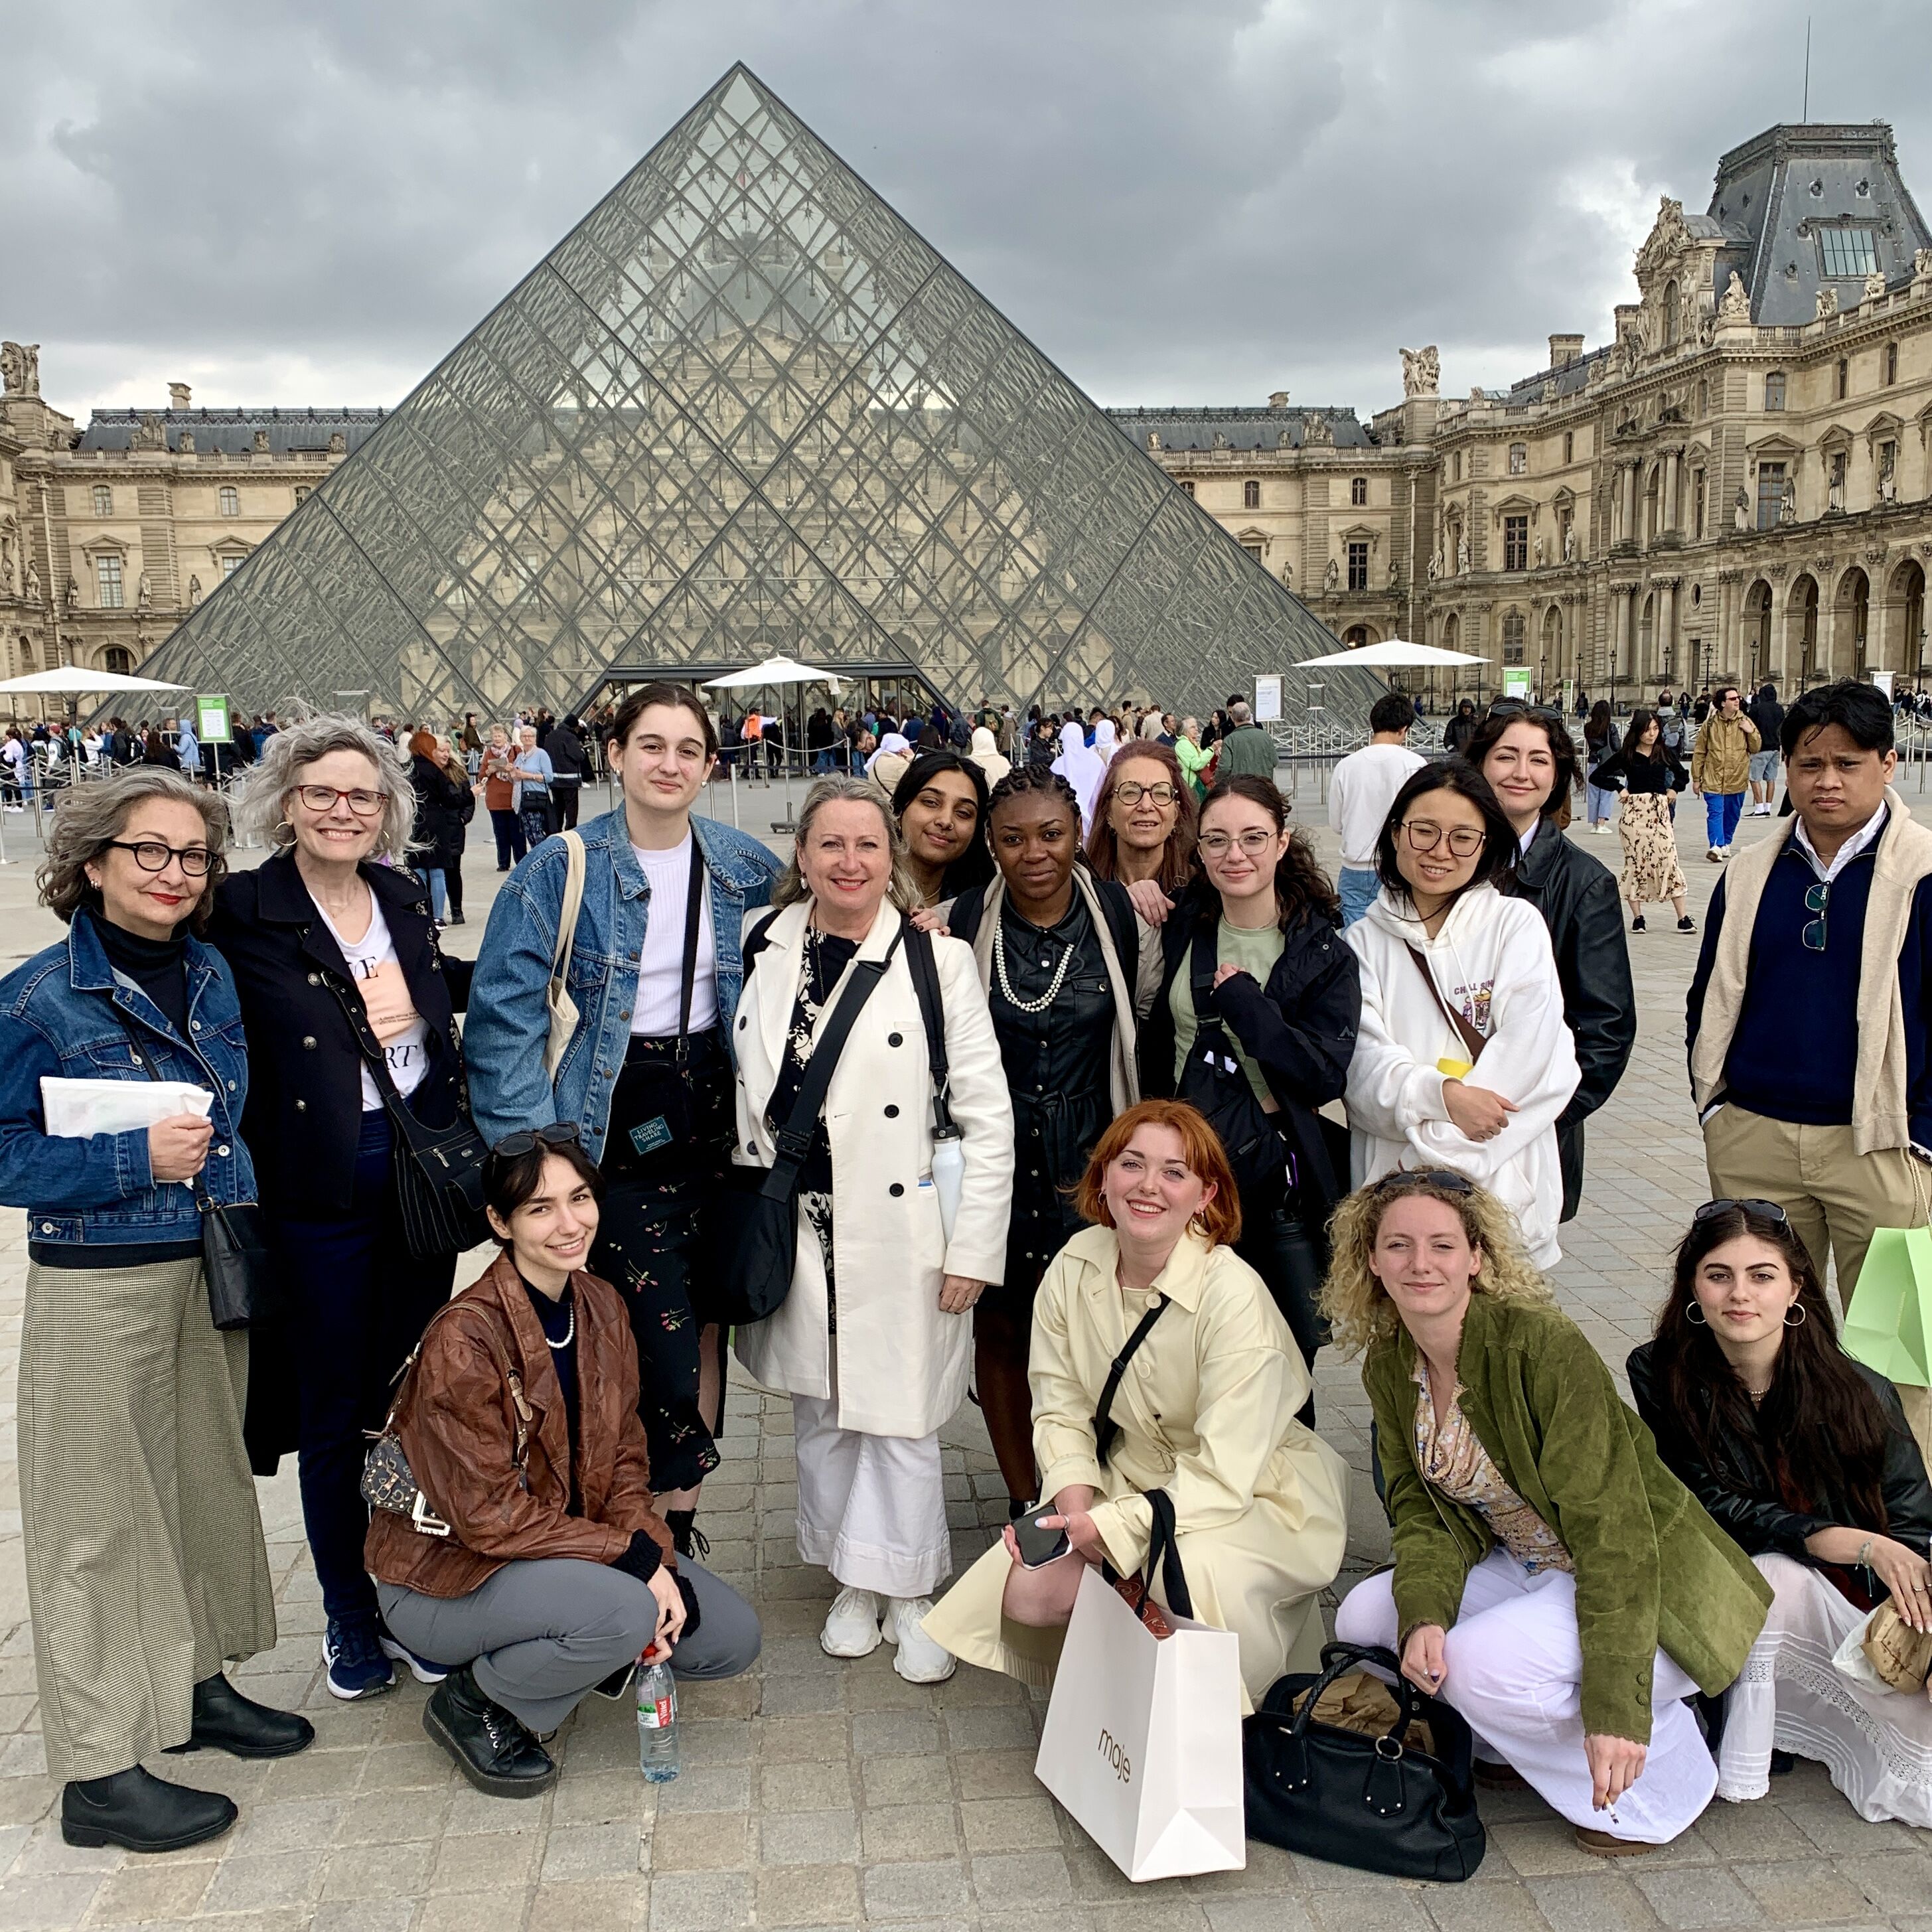 Un groupe multiculturel de douze touristes, affichant un mélange de tenues décontractées et élégantes, pose devant l'iconique pyramide du Louvre à Paris, capturant un moment de leur exploration culturelle.